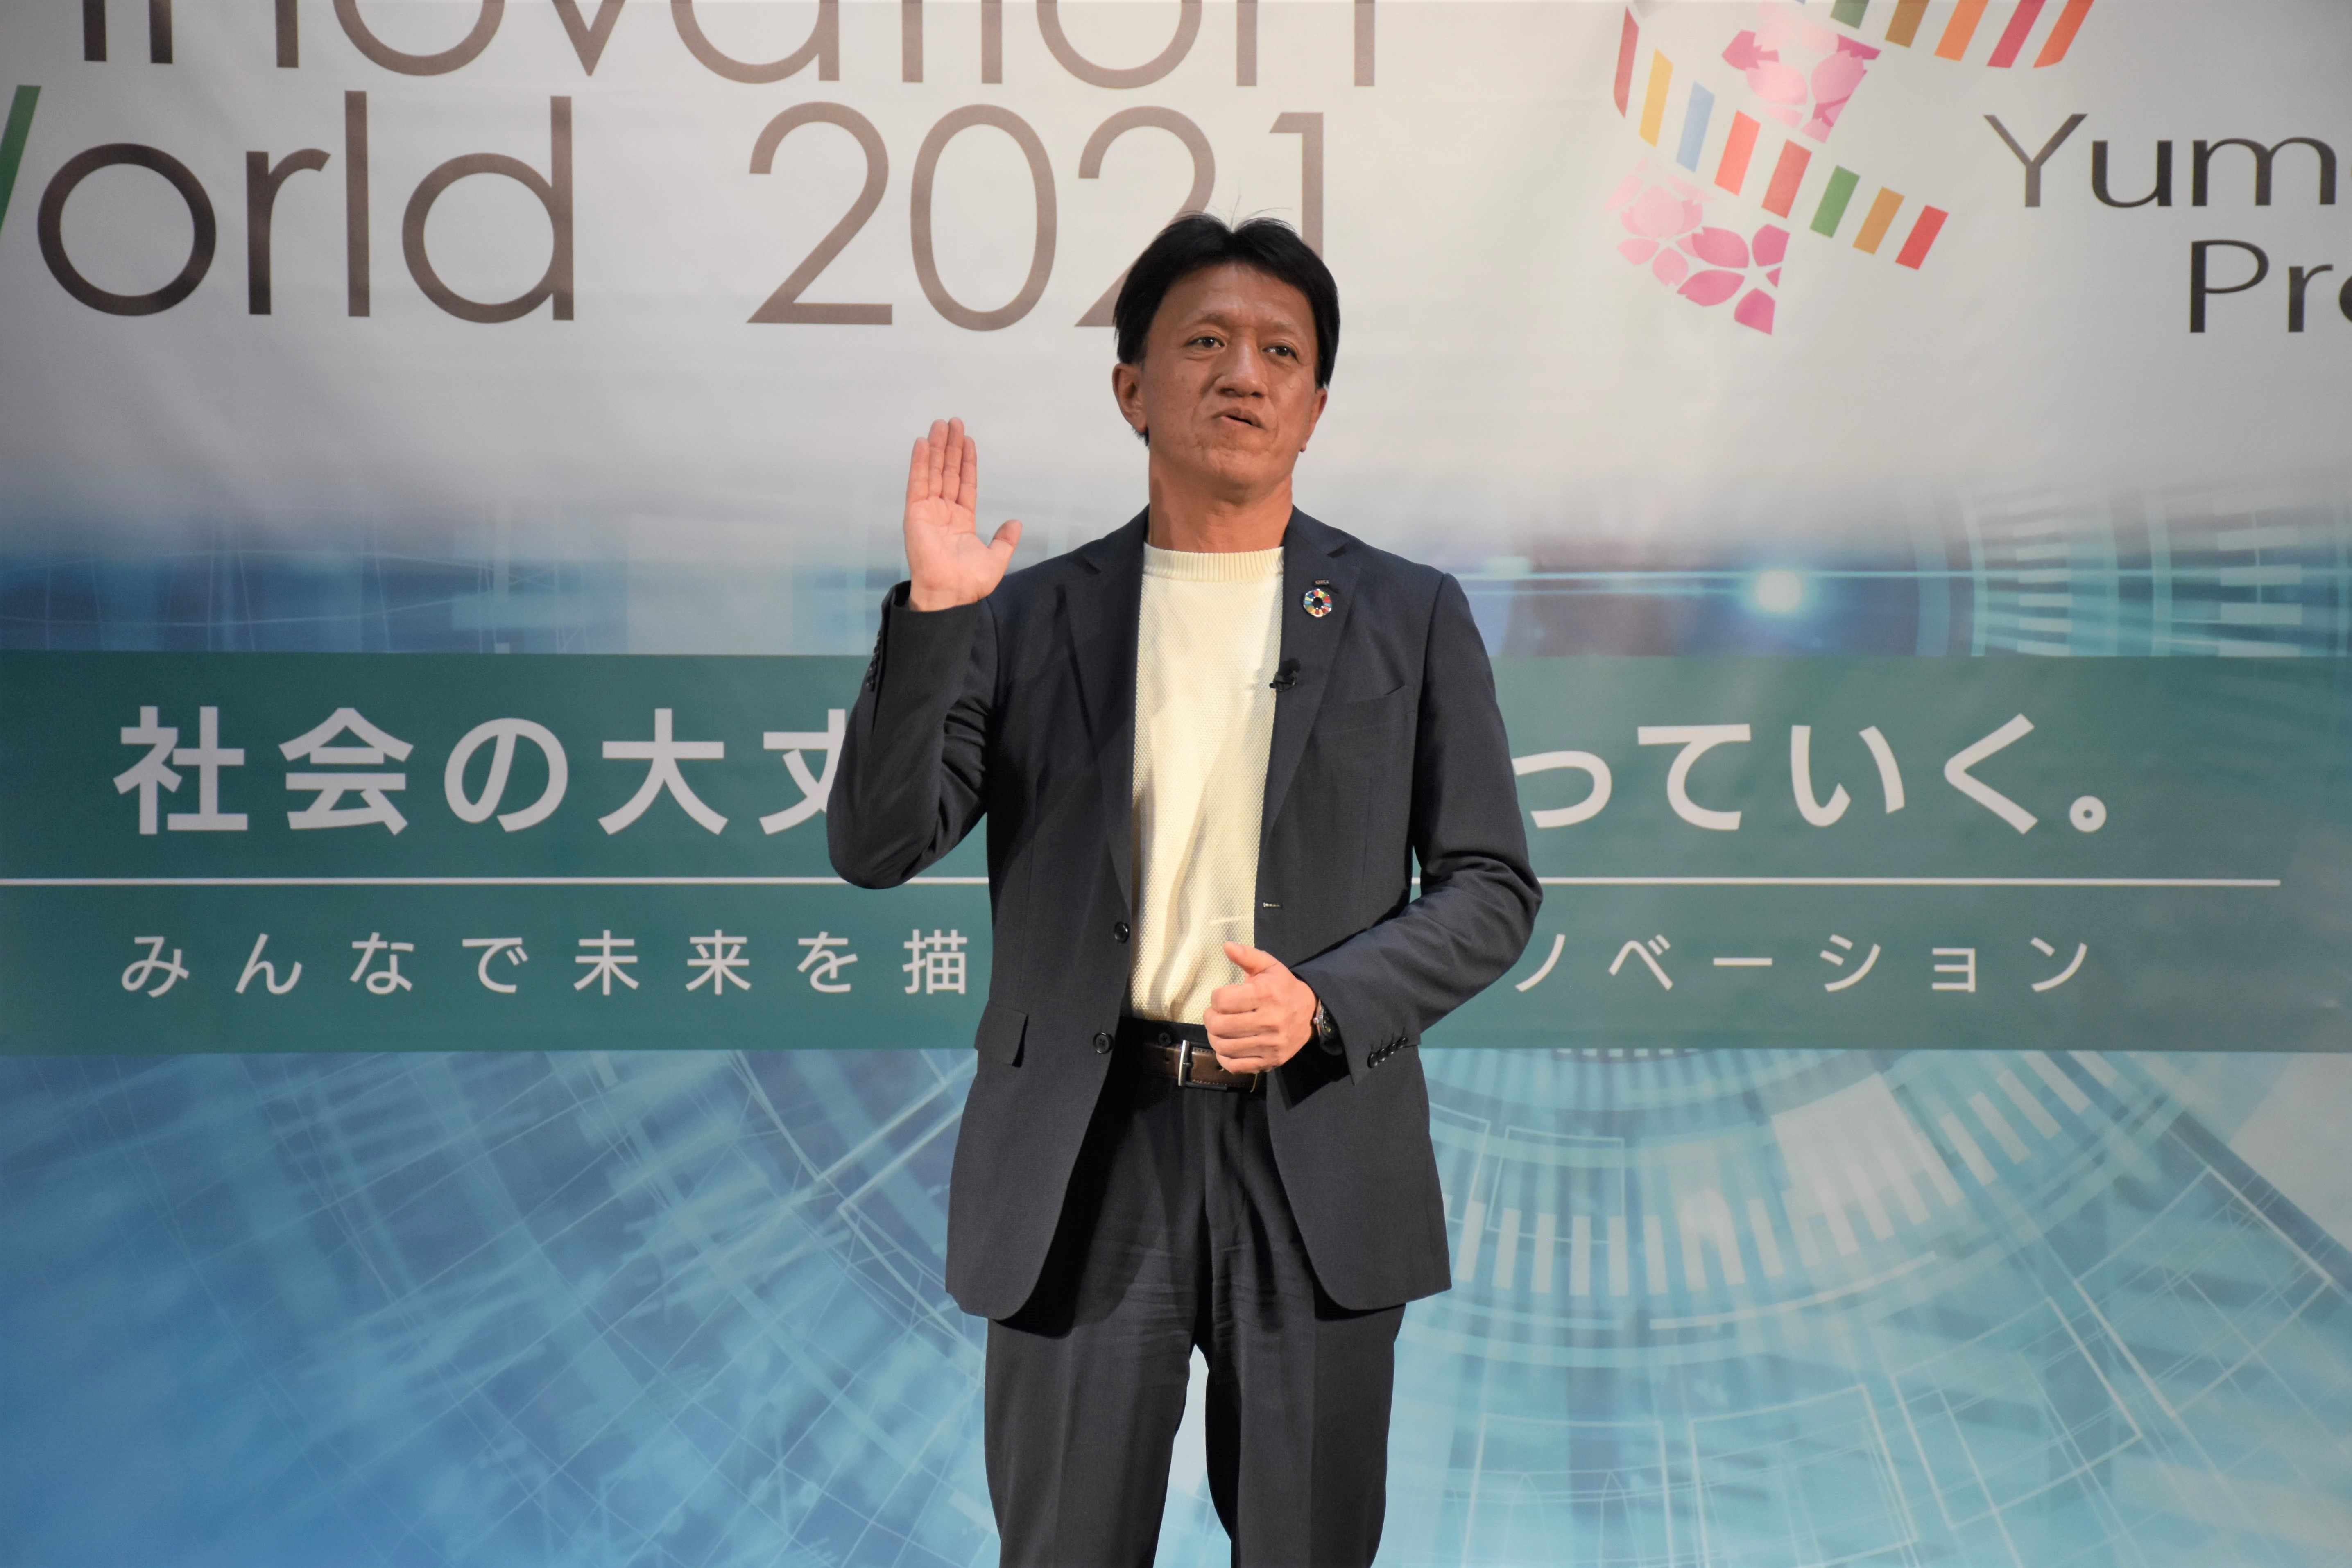 Toshiyuki Yokota